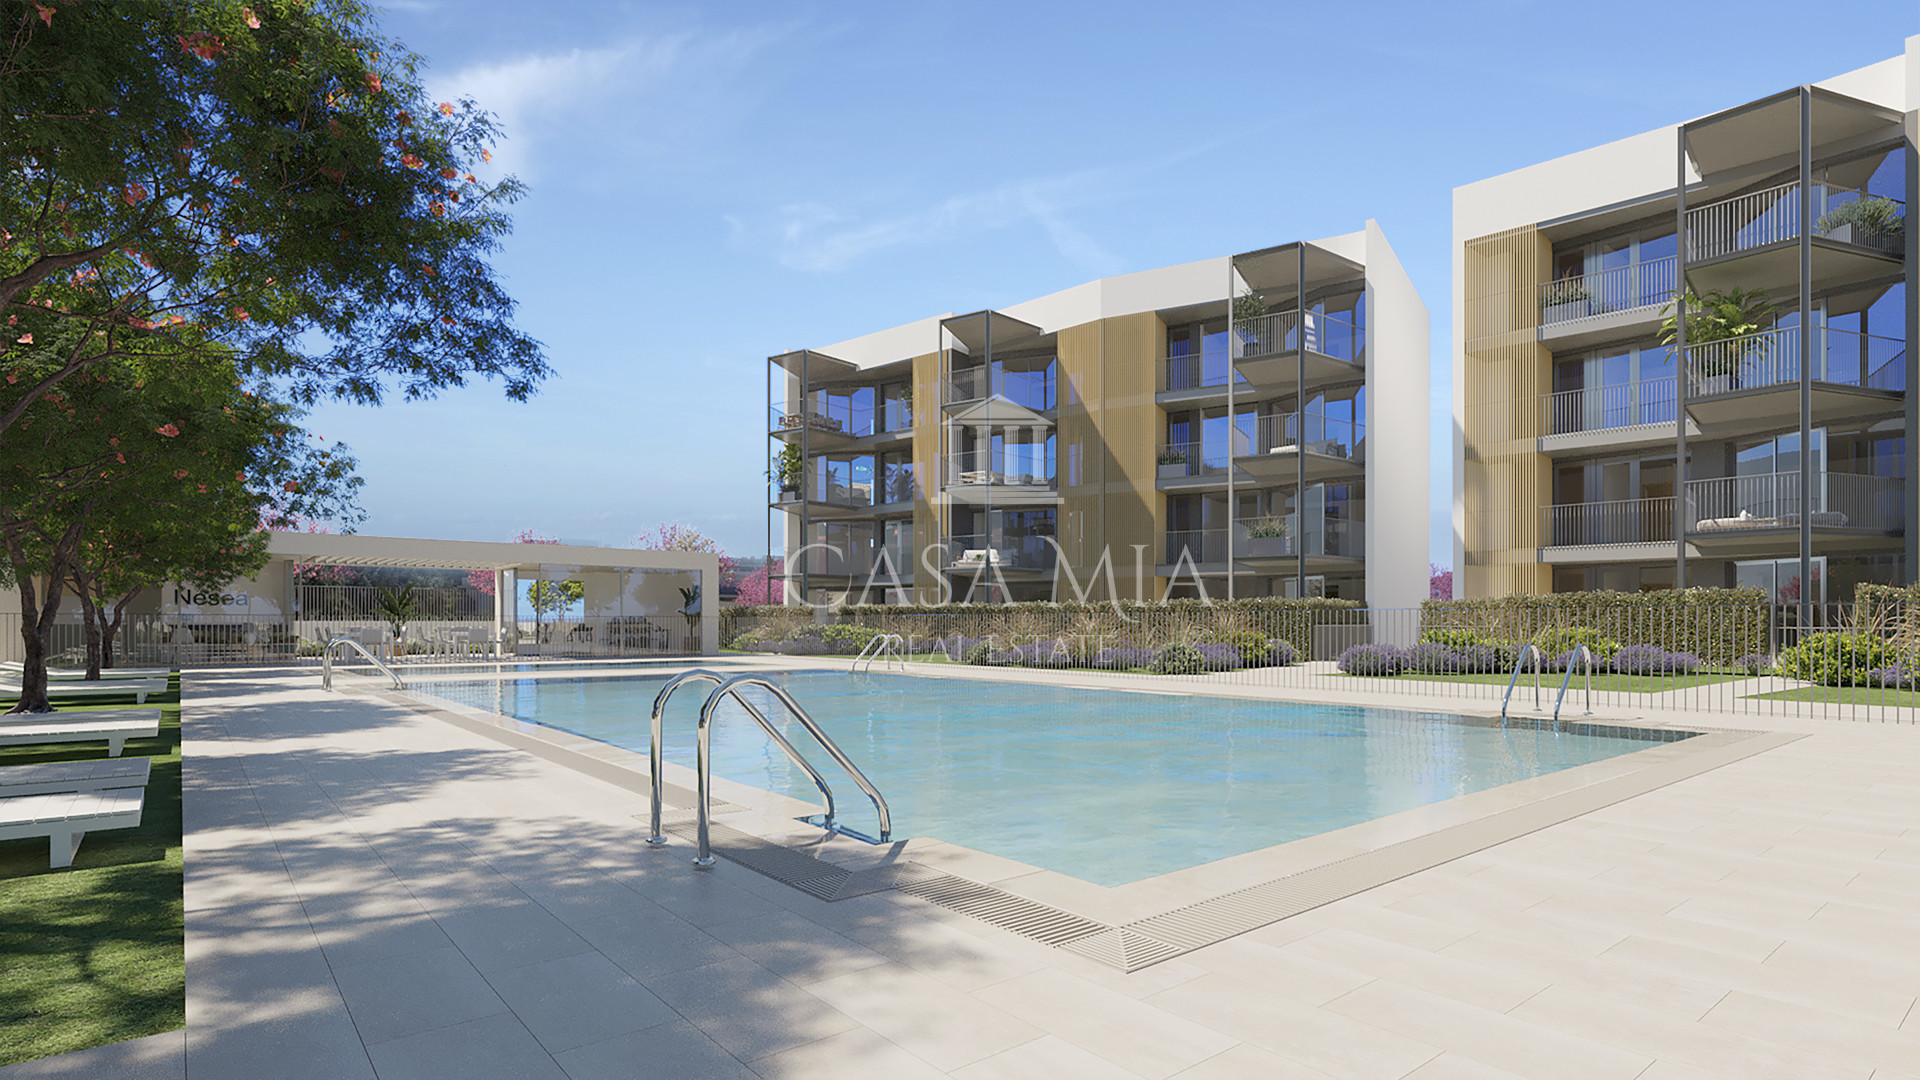 Projet : Appartement neuf avec piscine à proximité de la plage, Palmanova